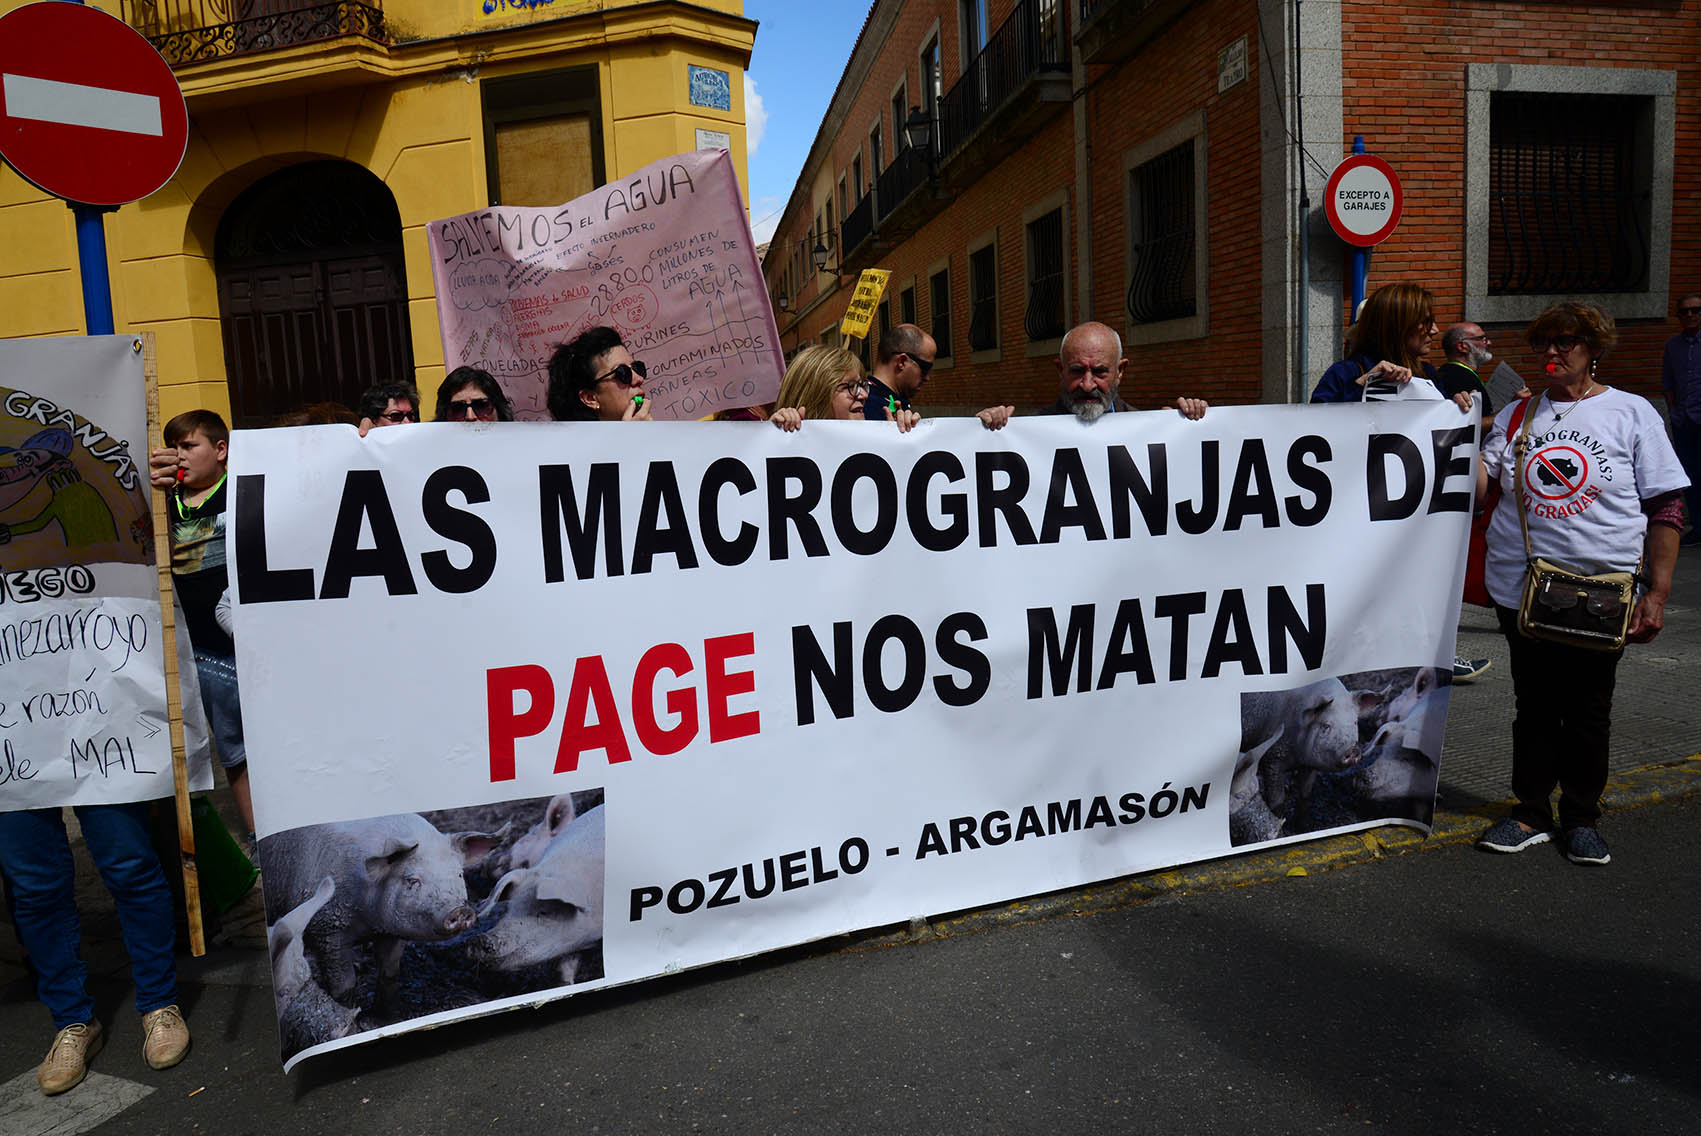 Protesta en Talavera por las macrograjas